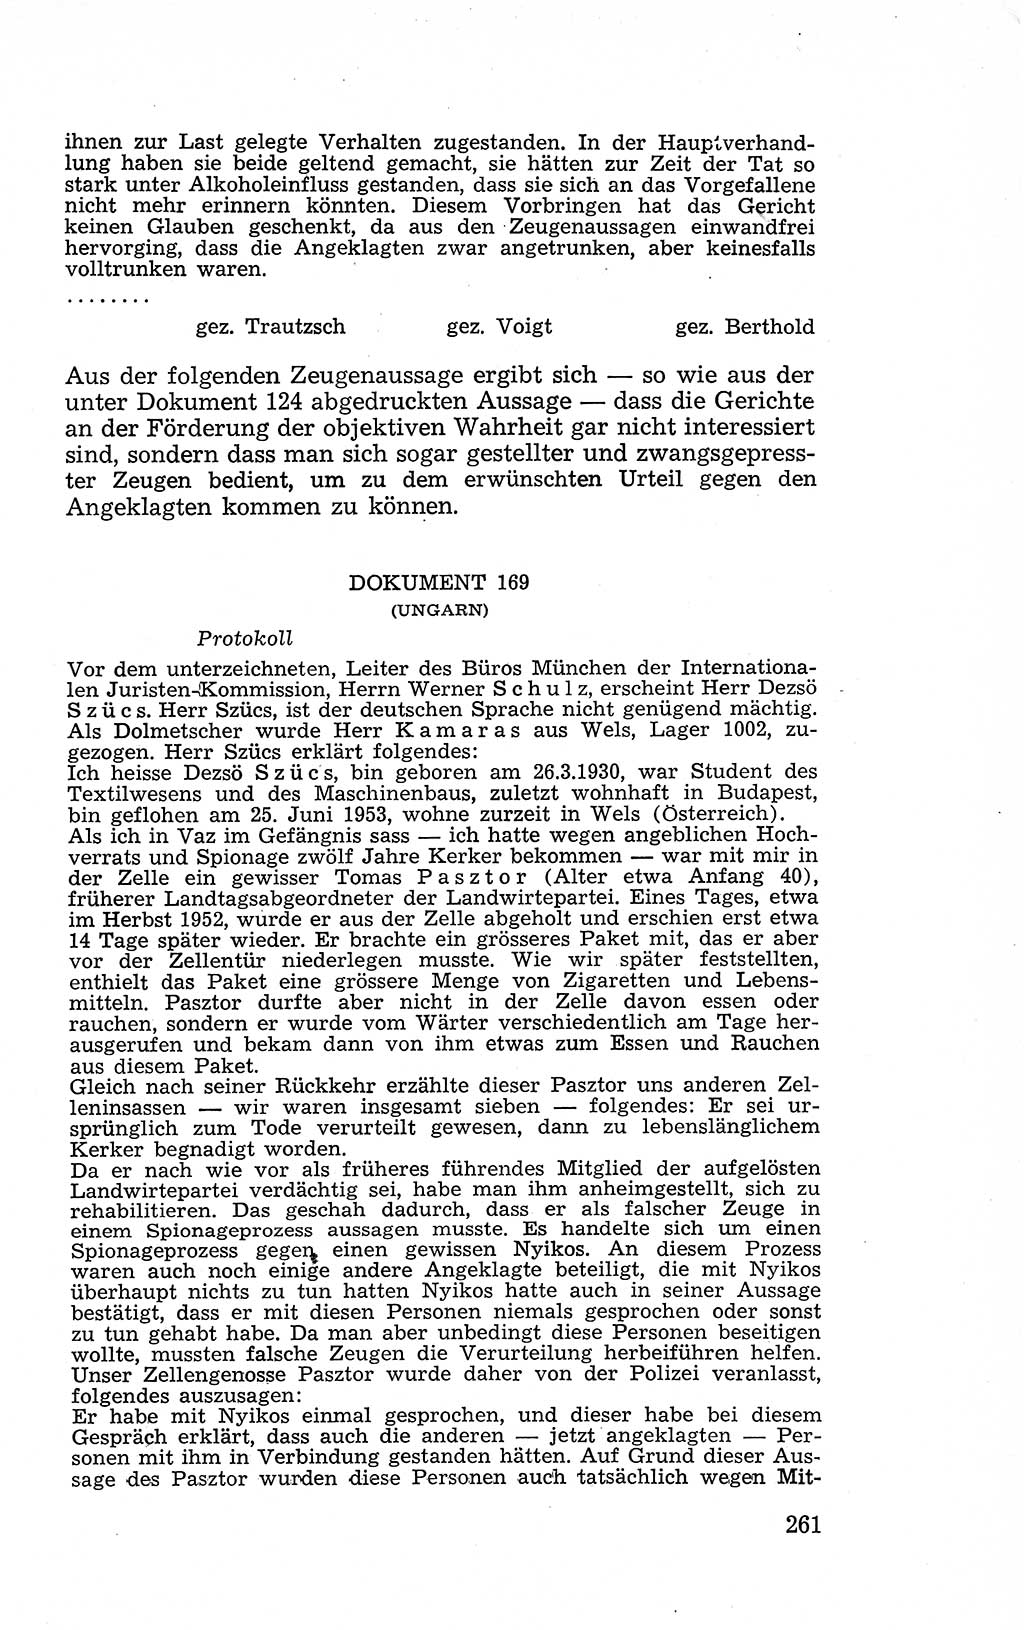 Recht in Fesseln, Dokumente, Internationale Juristen-Kommission [Bundesrepublik Deutschland (BRD)] 1955, Seite 261 (R. Dok. IJK BRD 1955, S. 261)